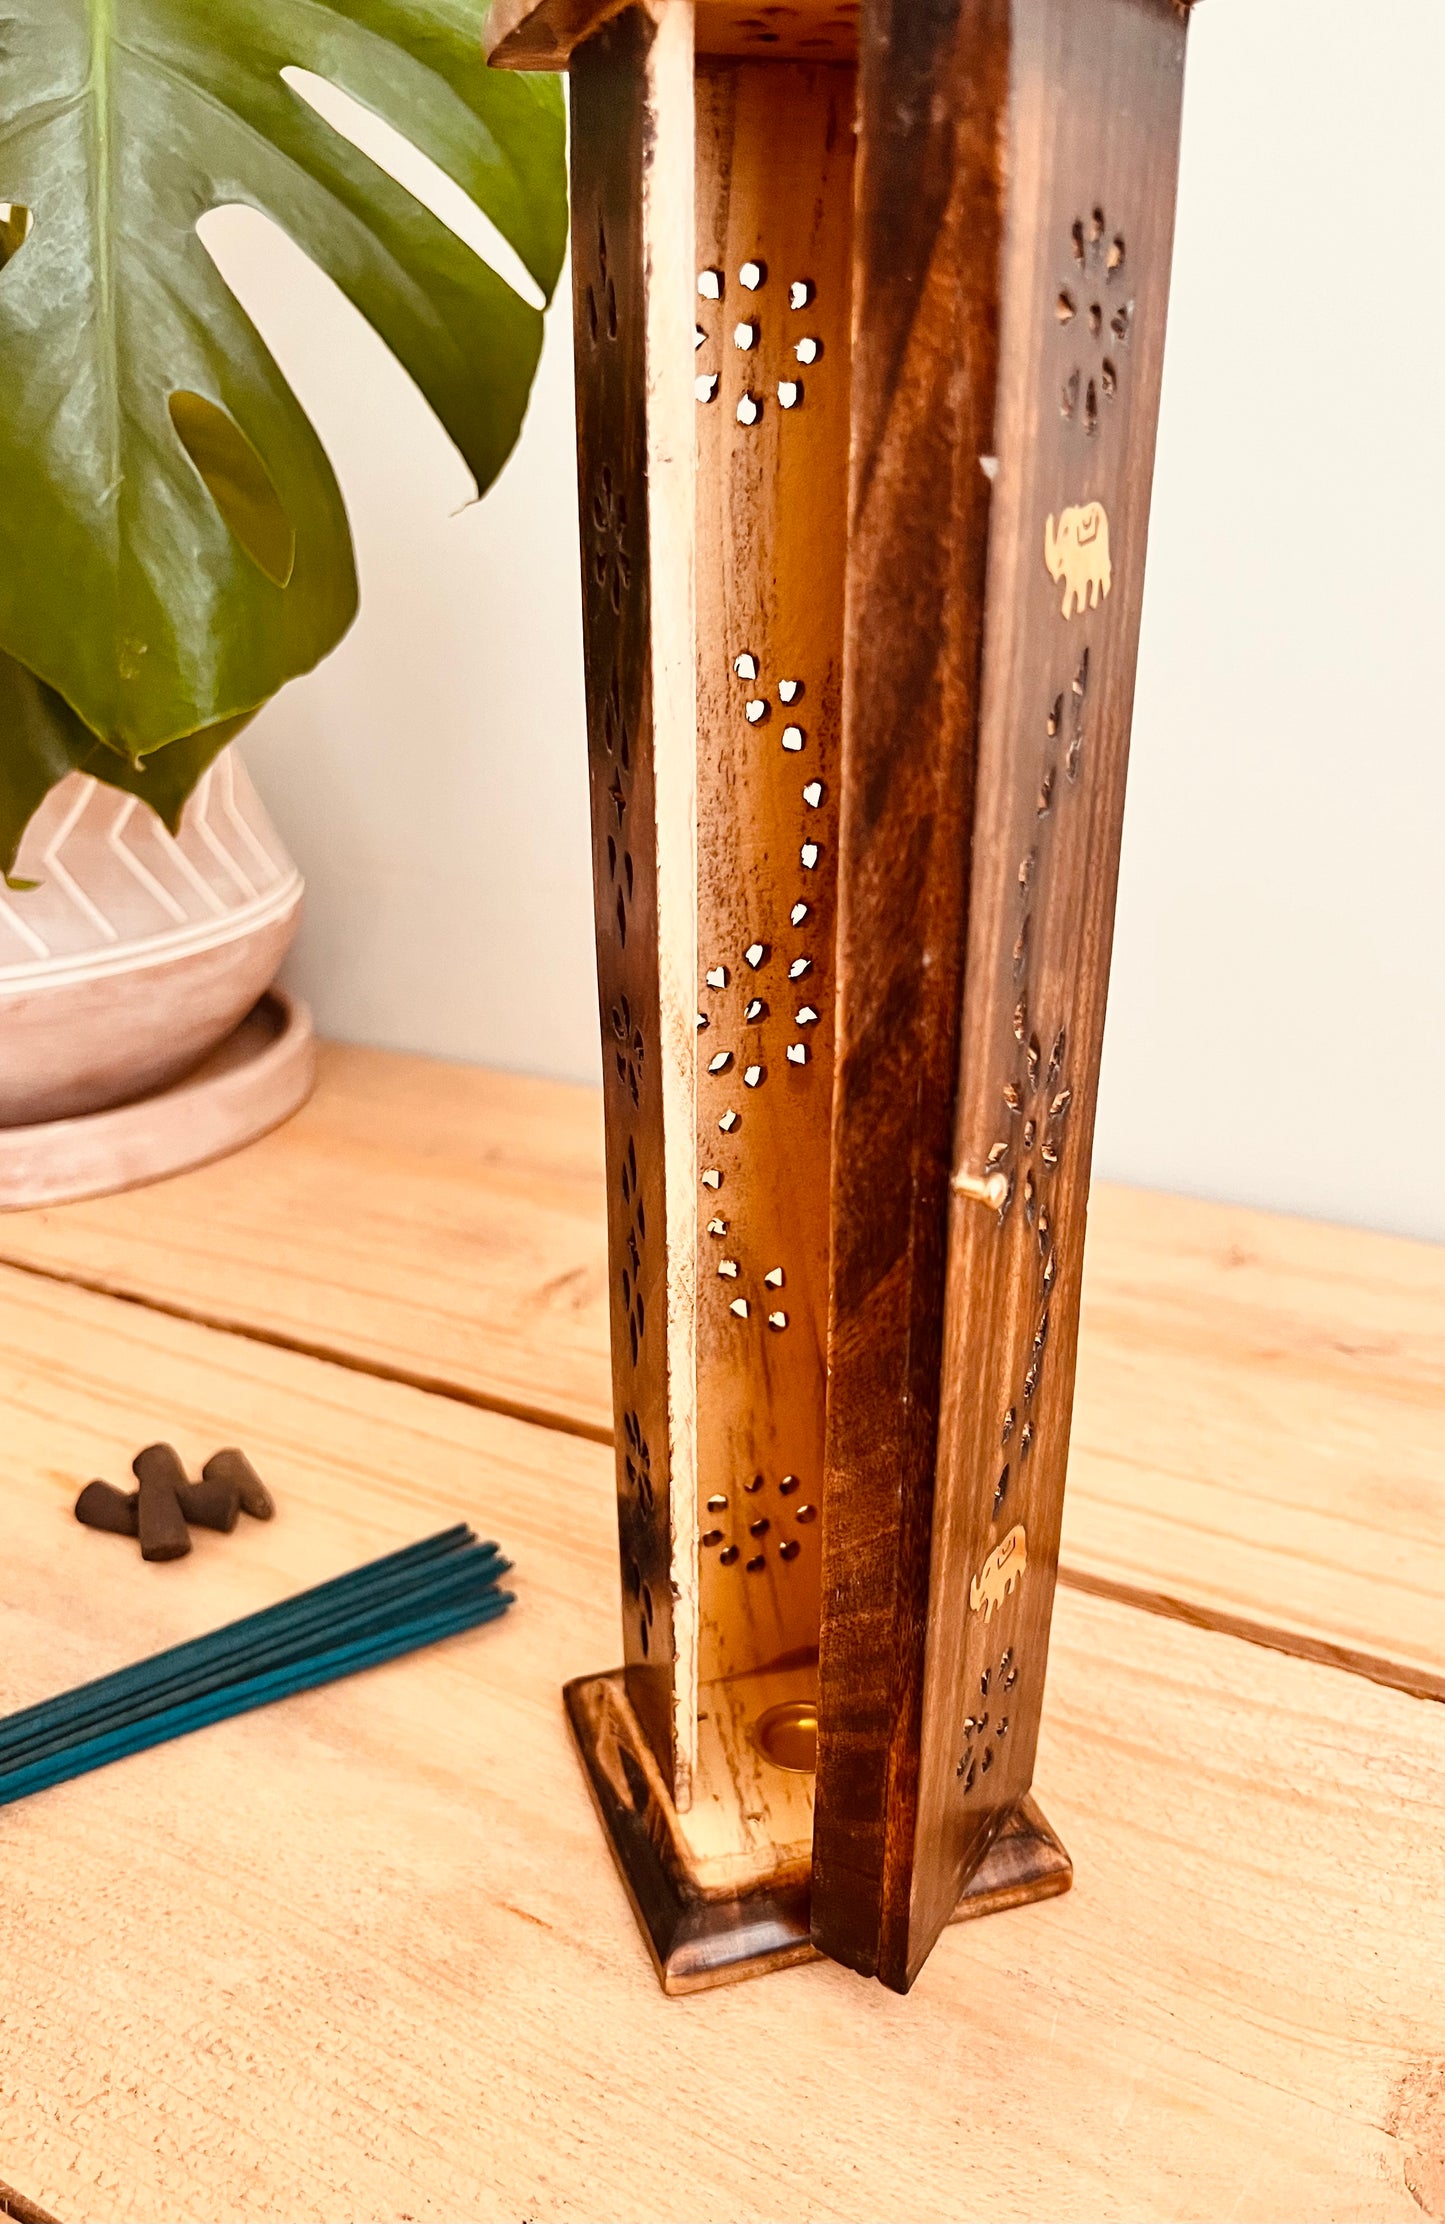 Fair trade wooden incense stick incense cone burner box